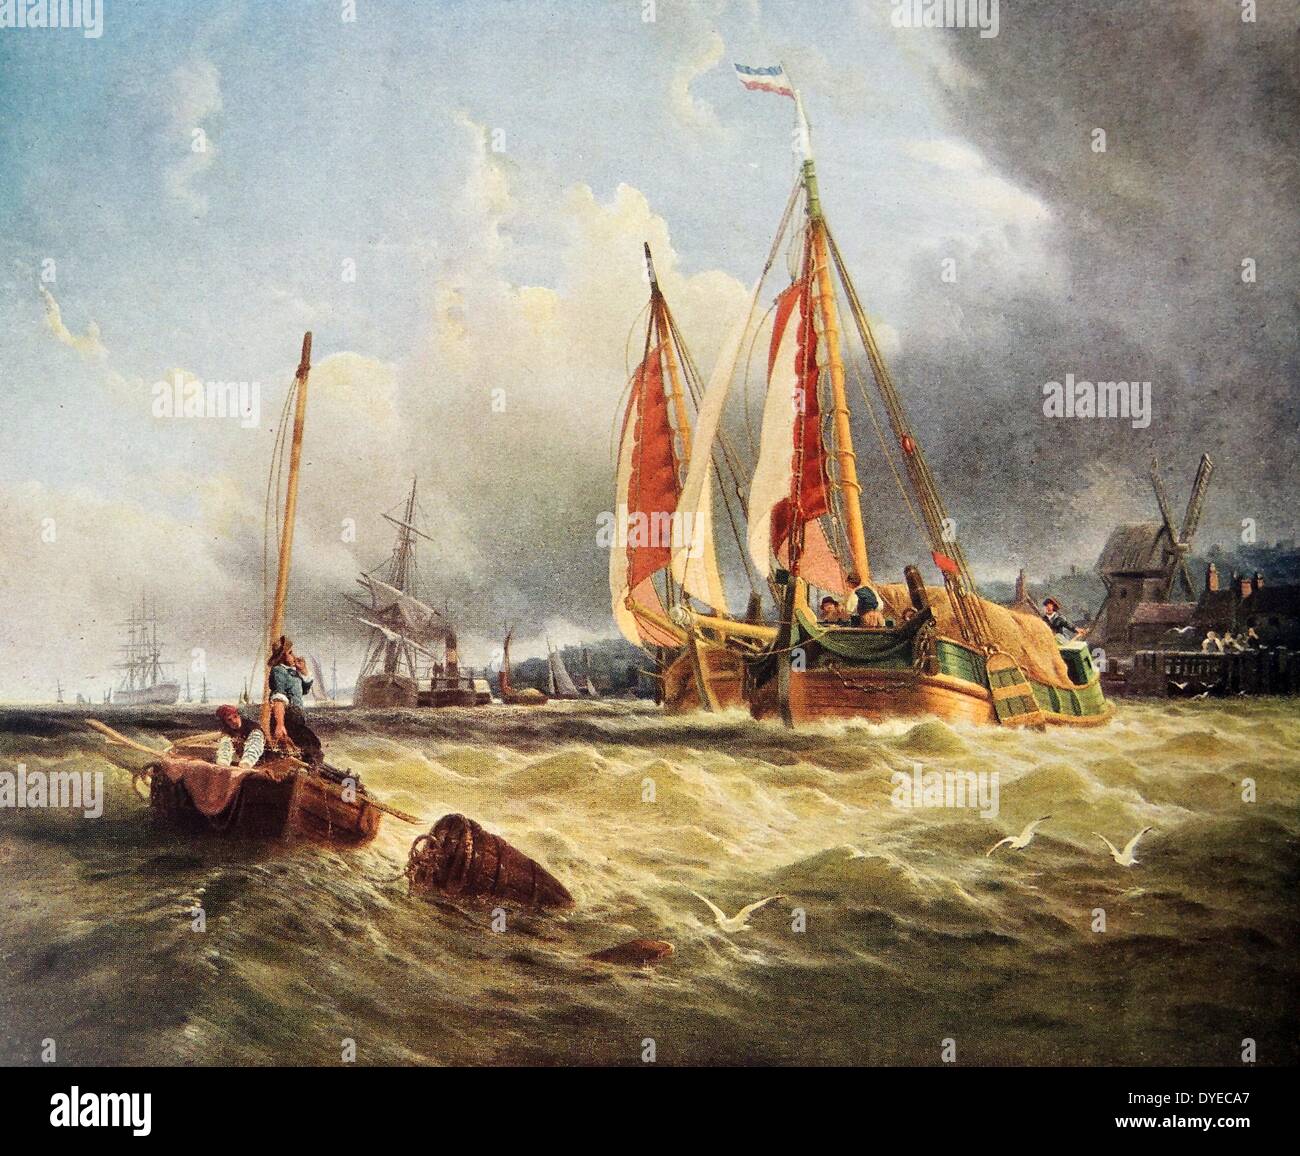 La peinture de paysage marin intitulé 'Oude Sheld, Texel Island'. La peinture représente une mer turbulente et divers types de bateaux par un quai. Sombres nuages ci-dessus suggèrent une tempête est en attente. Par Clarkson Frederick Stanfield (1793 - 1867) peintre de marine français. Datée 1841 Banque D'Images